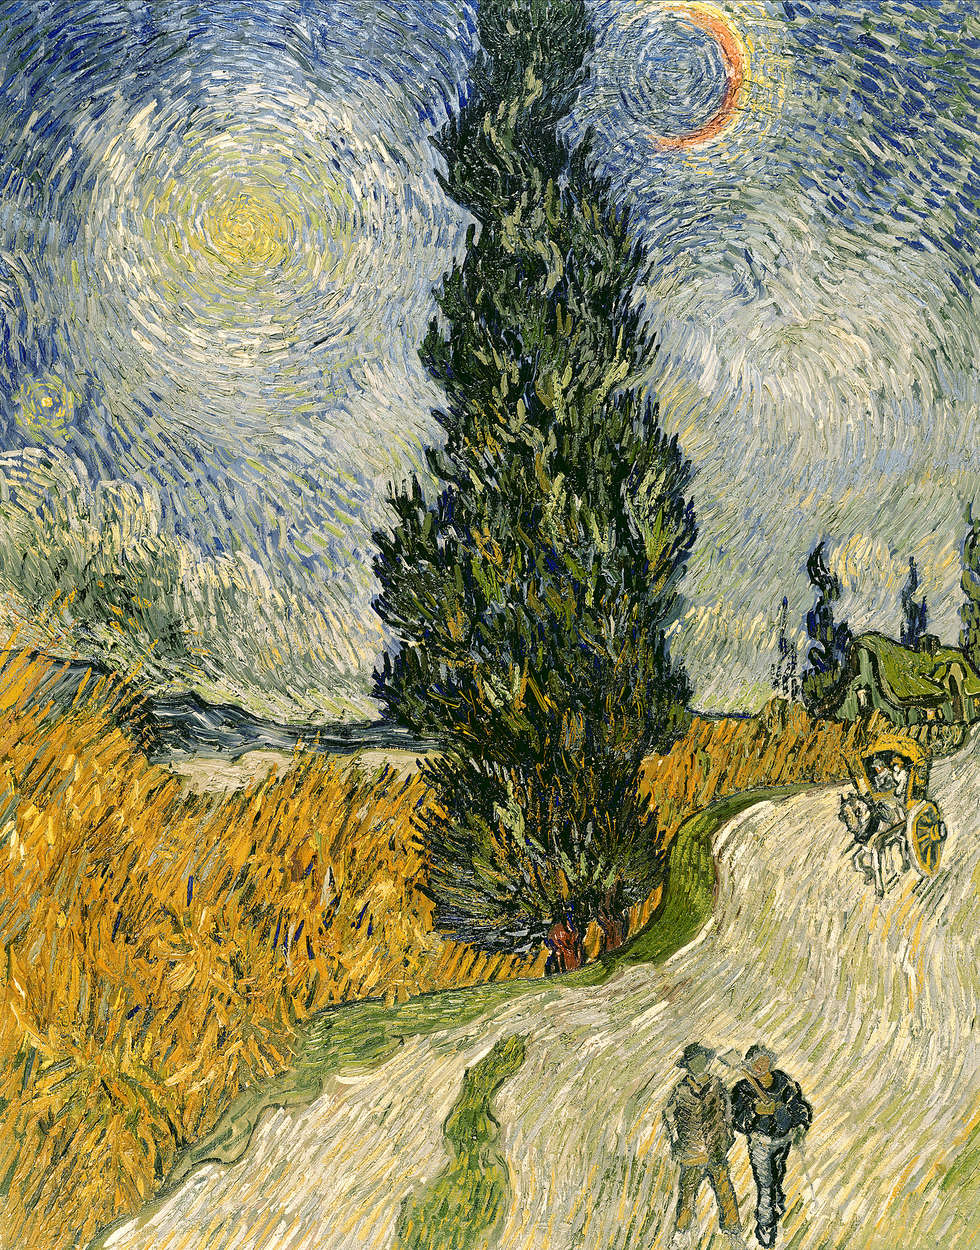             Fototapete "Straße mit Zypressen und Stern" von Vincent van Gogh
        